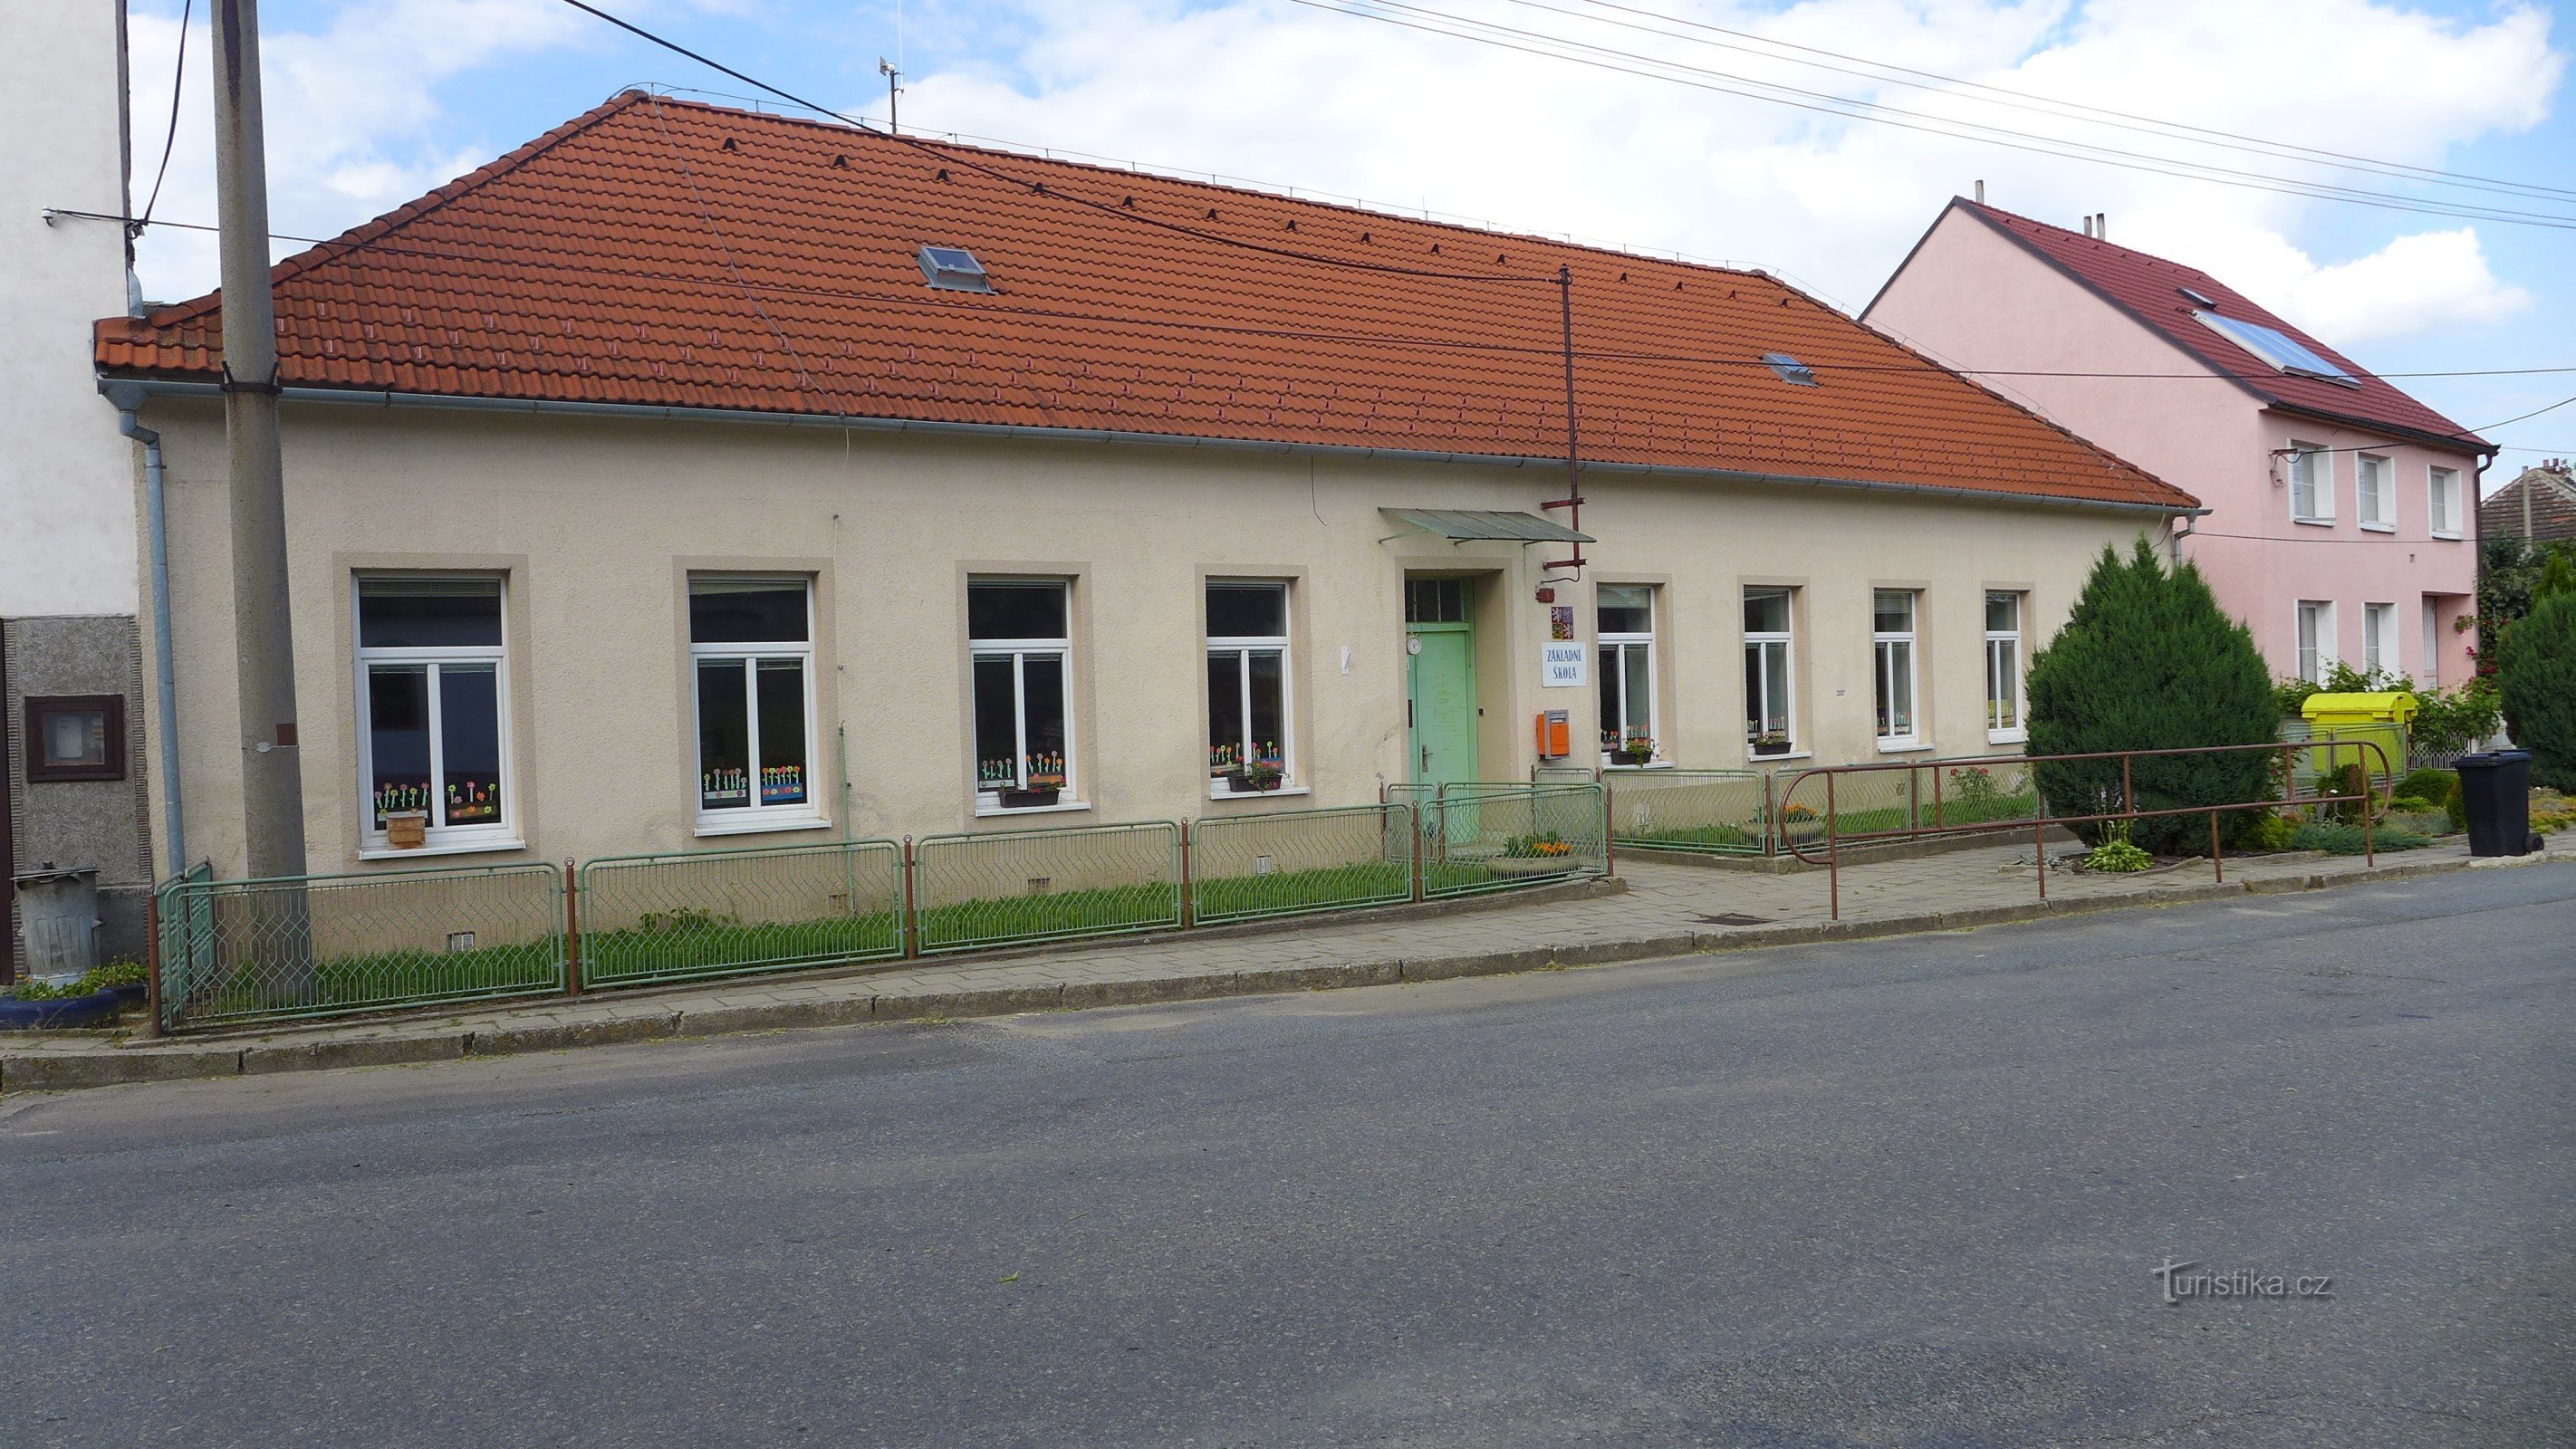 Dolní Vilémovice - școală primară